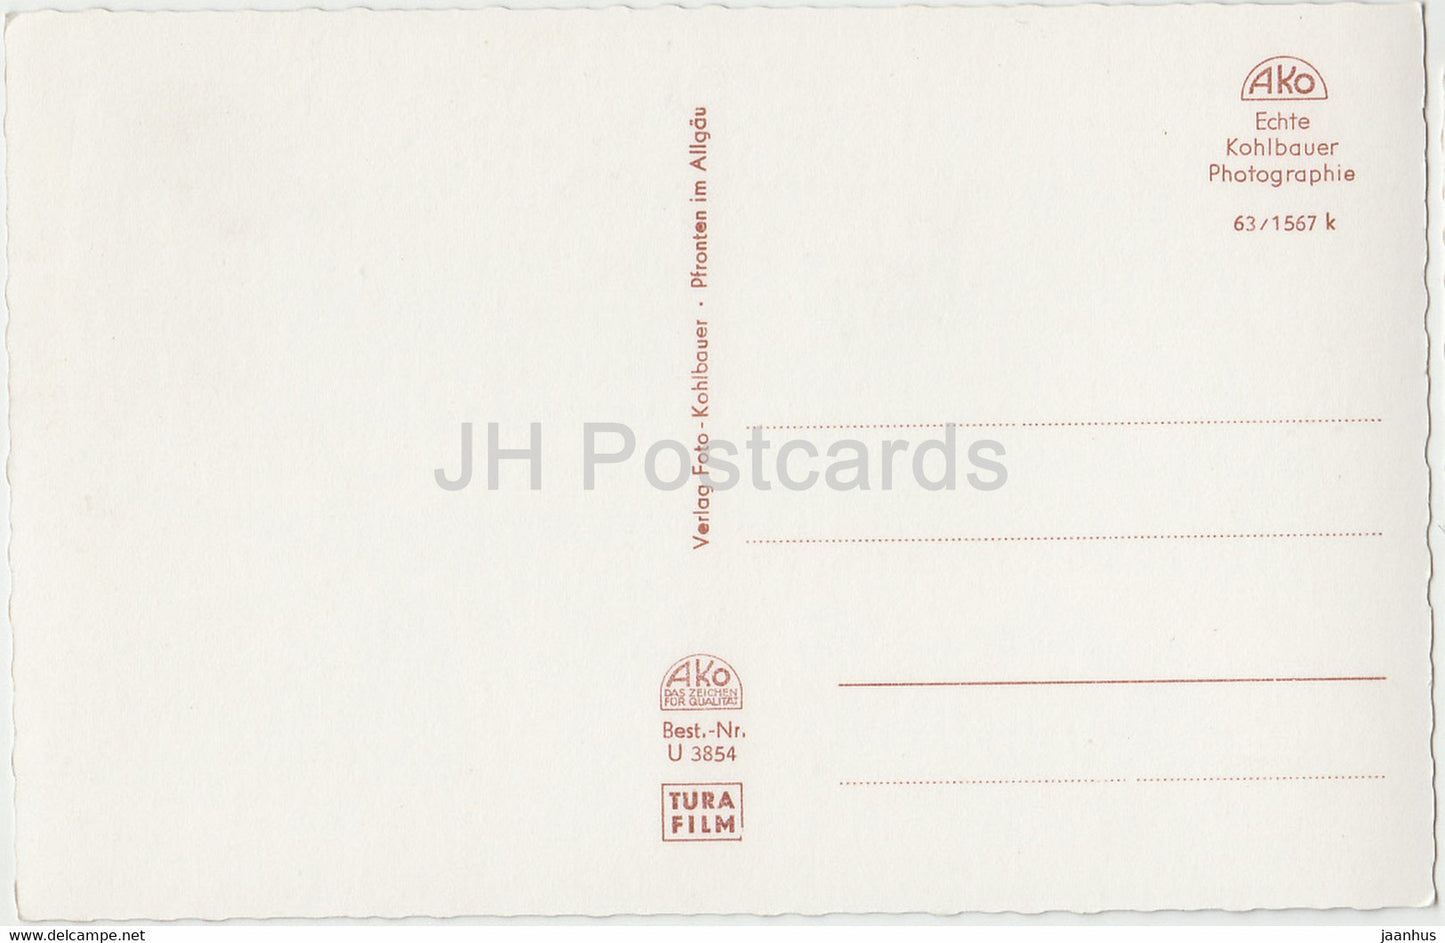 Gruss aus Hammelburg - Burg Saaleck - Totalansicht - old postcard - Germany - unused